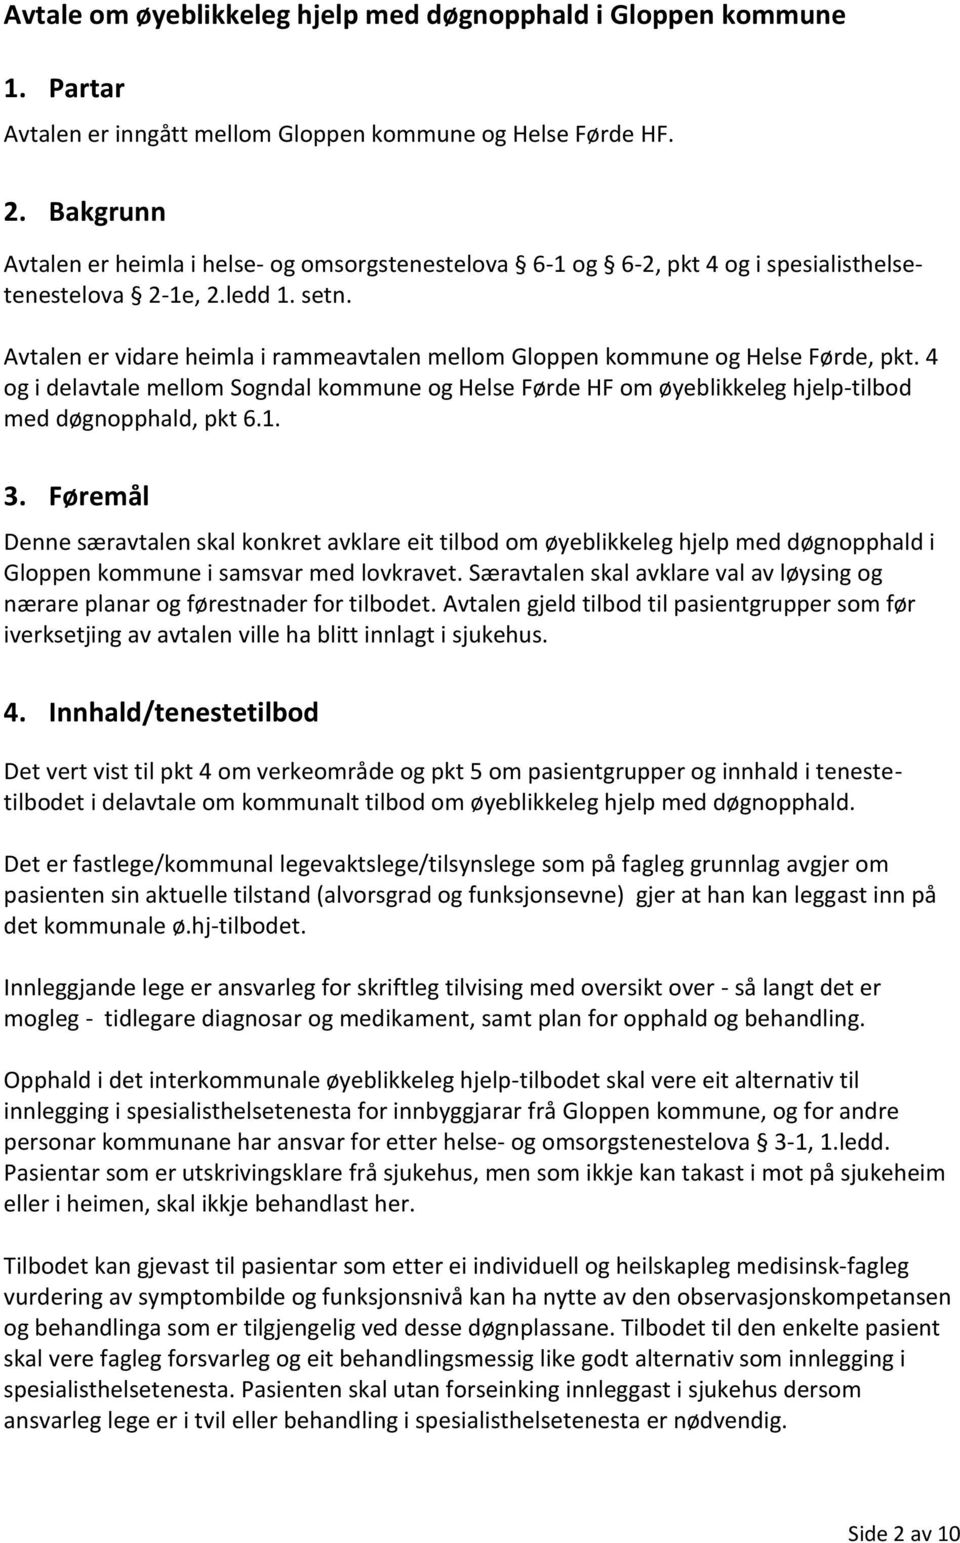 Avtalen er vidare heimla i rammeavtalen mellom Gloppen kommune og Helse Førde, pkt. 4 og i delavtale mellom Sogndal kommune og Helse Førde HF om øyeblikkeleg hjelp-tilbod med døgnopphald, pkt 6.1. 3.